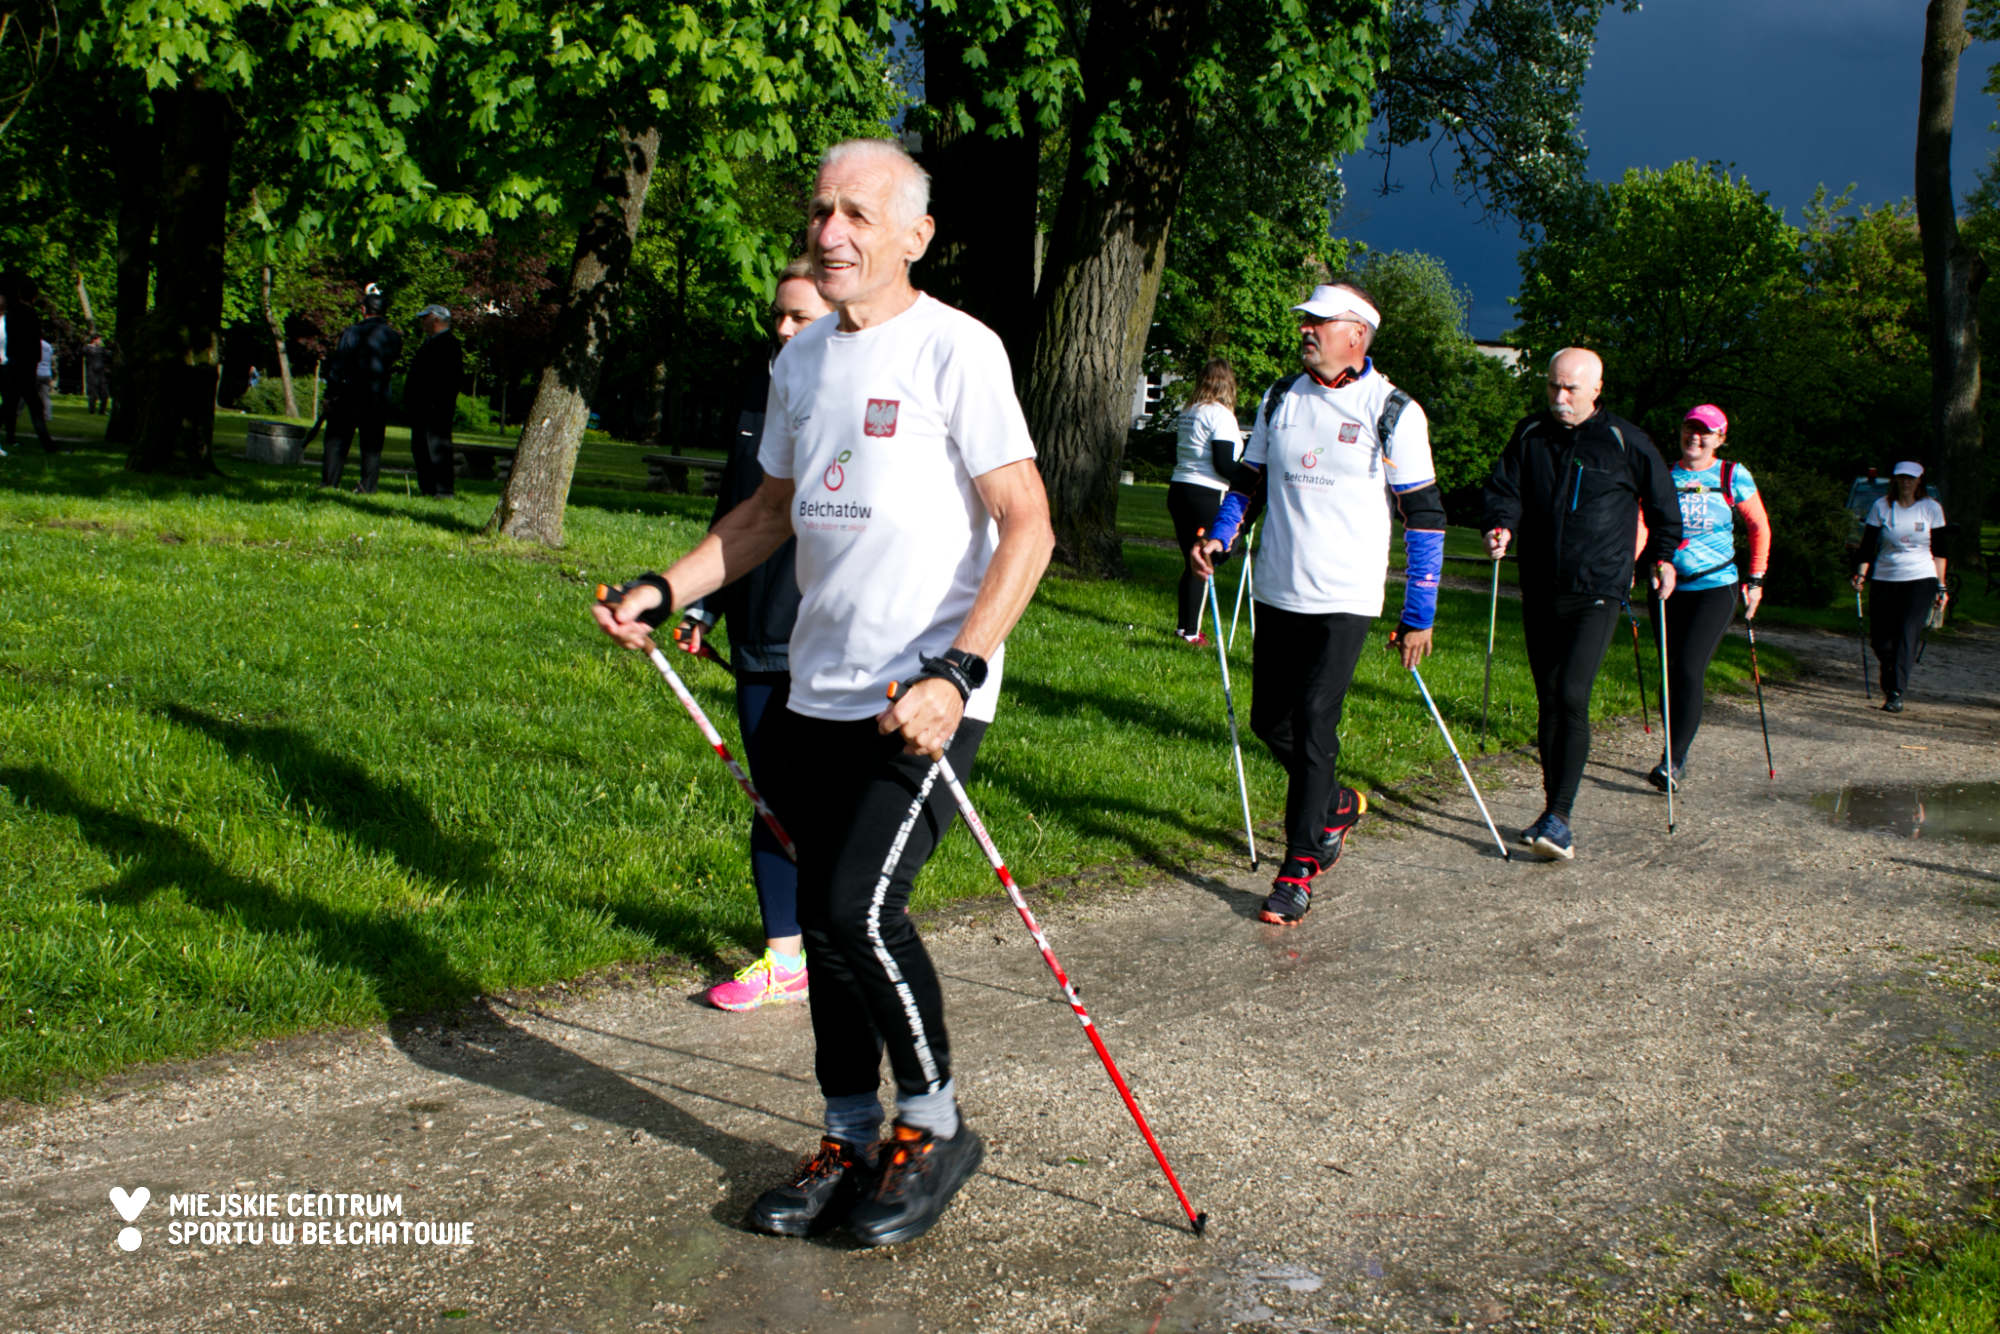 na zdjęciu widoczni są uczestnicy Warsztatów Nordic Walking Bełchatów, którzy maszerują z kijkami w ramach szkolenia i treningu